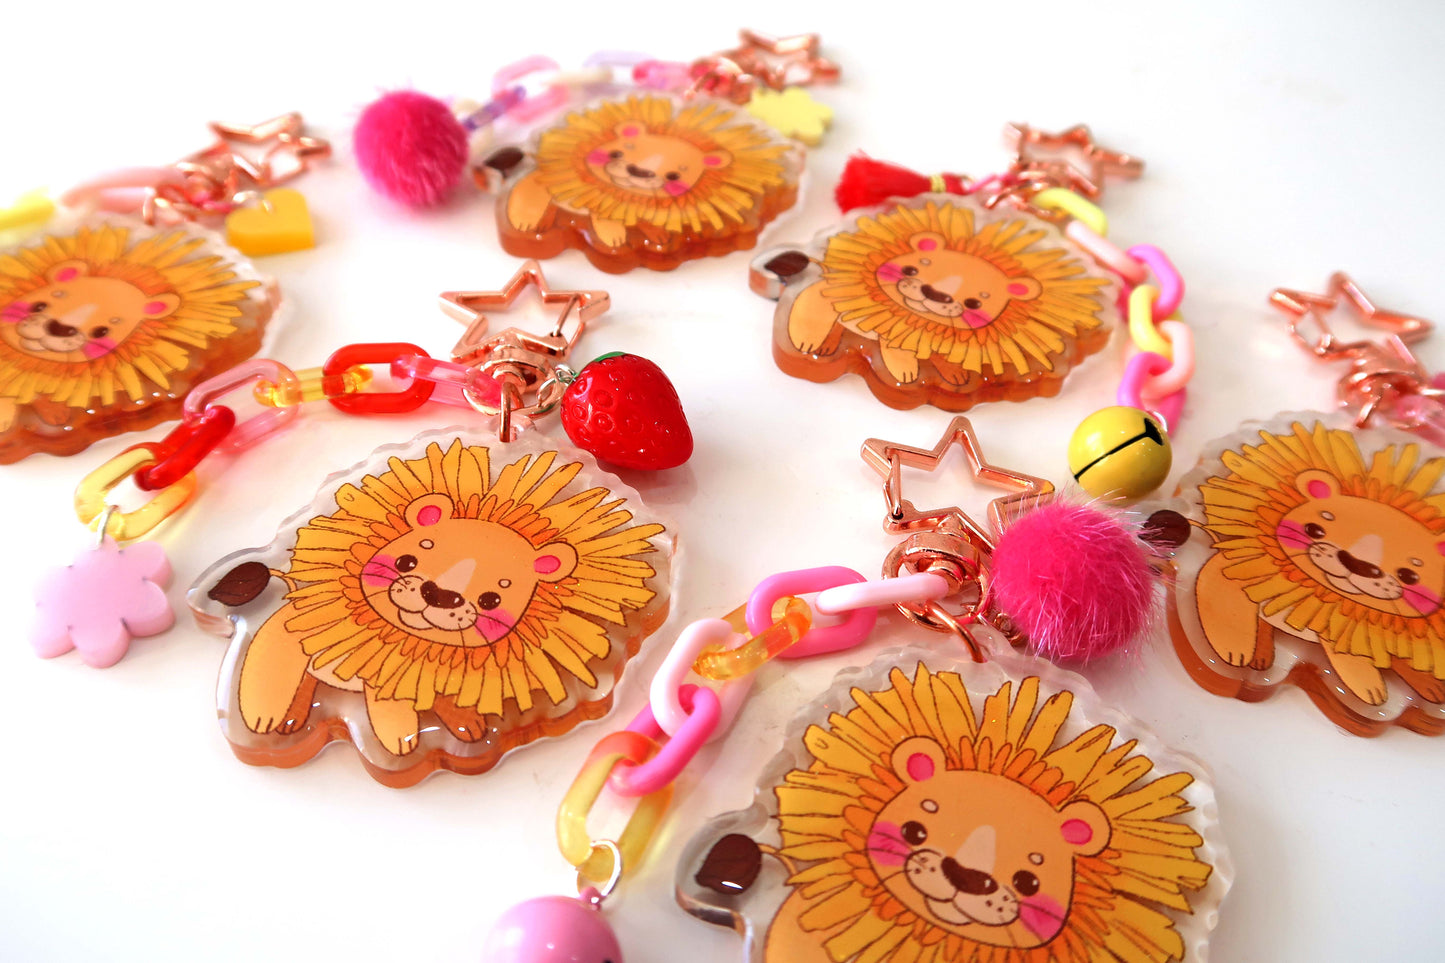 Dande-lion glitter acrylic keyring w/ charms